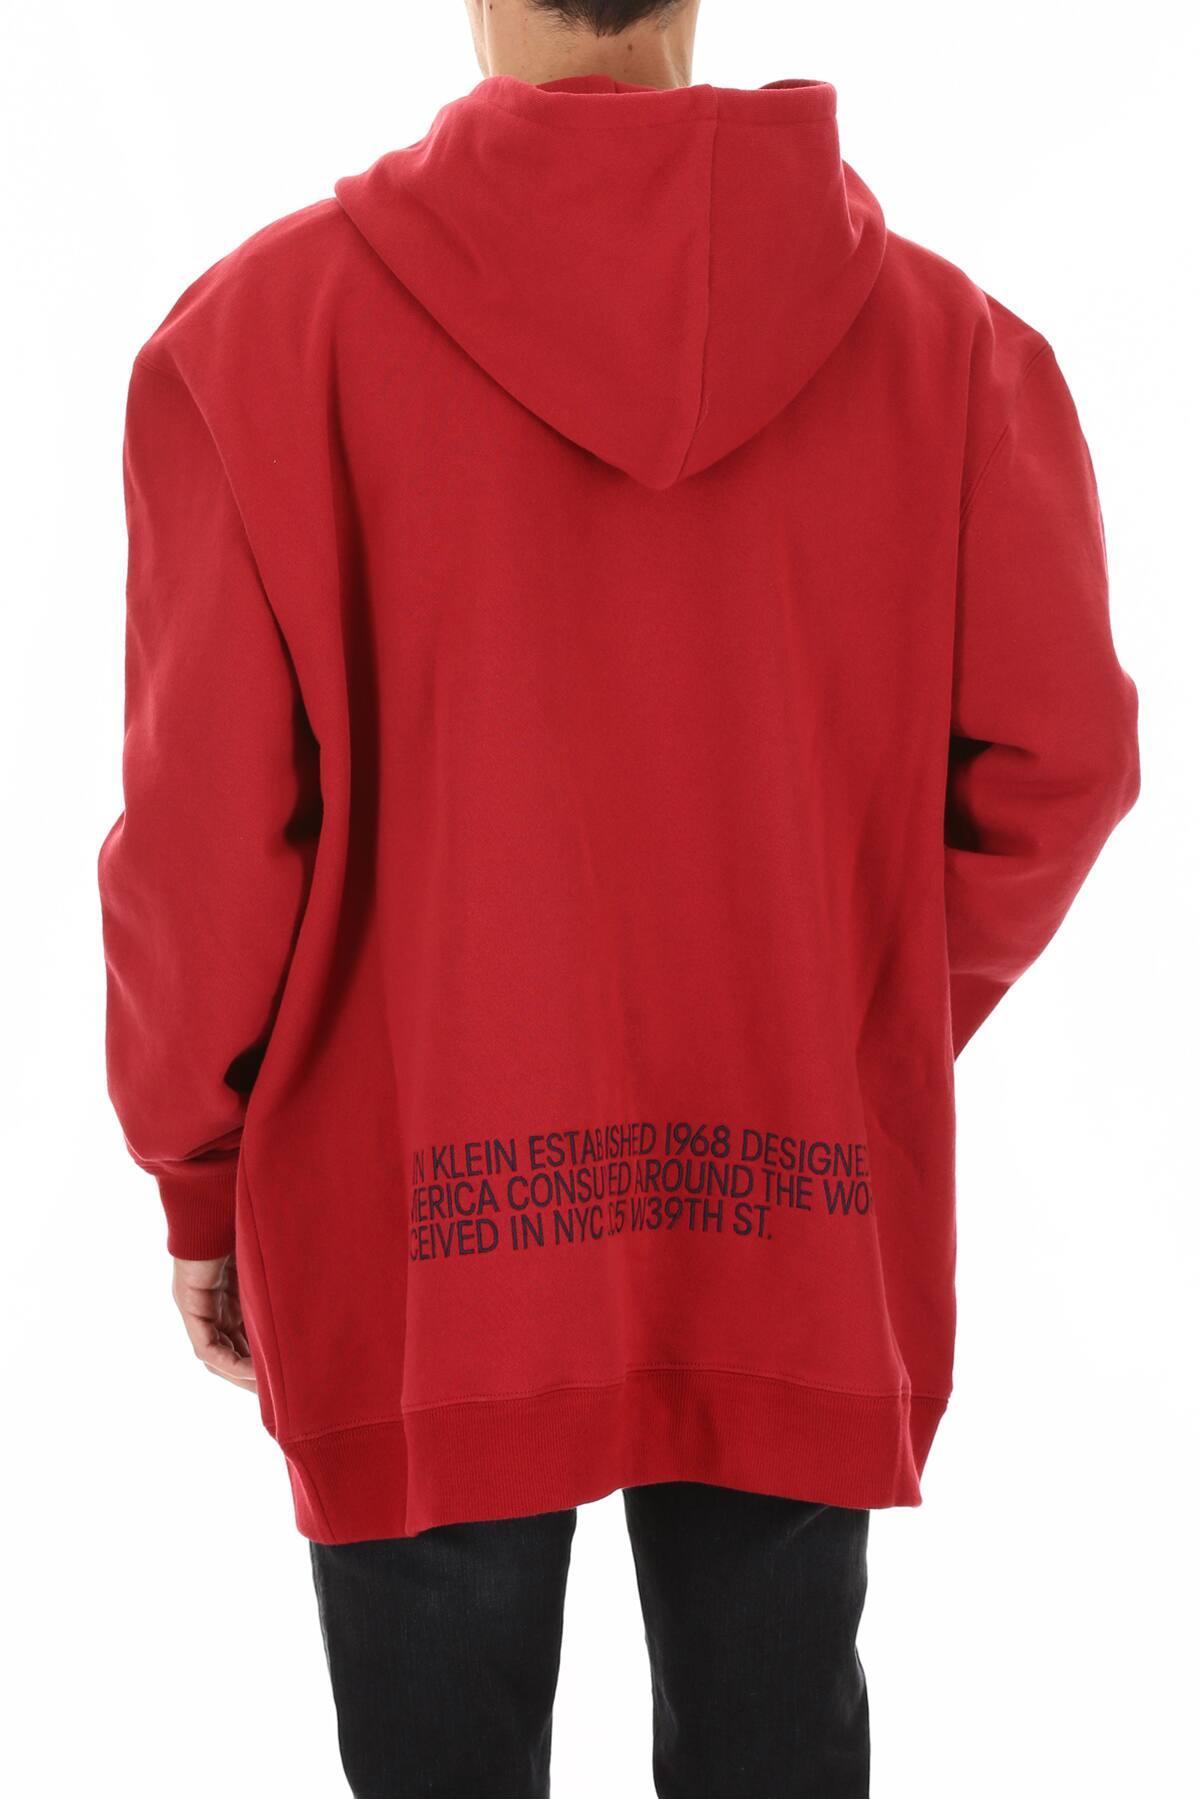 CALVIN KLEIN 205W39NYC Cotton Men's Oversized Logo Hoodie in Dark Red (Red)  for Men - Lyst